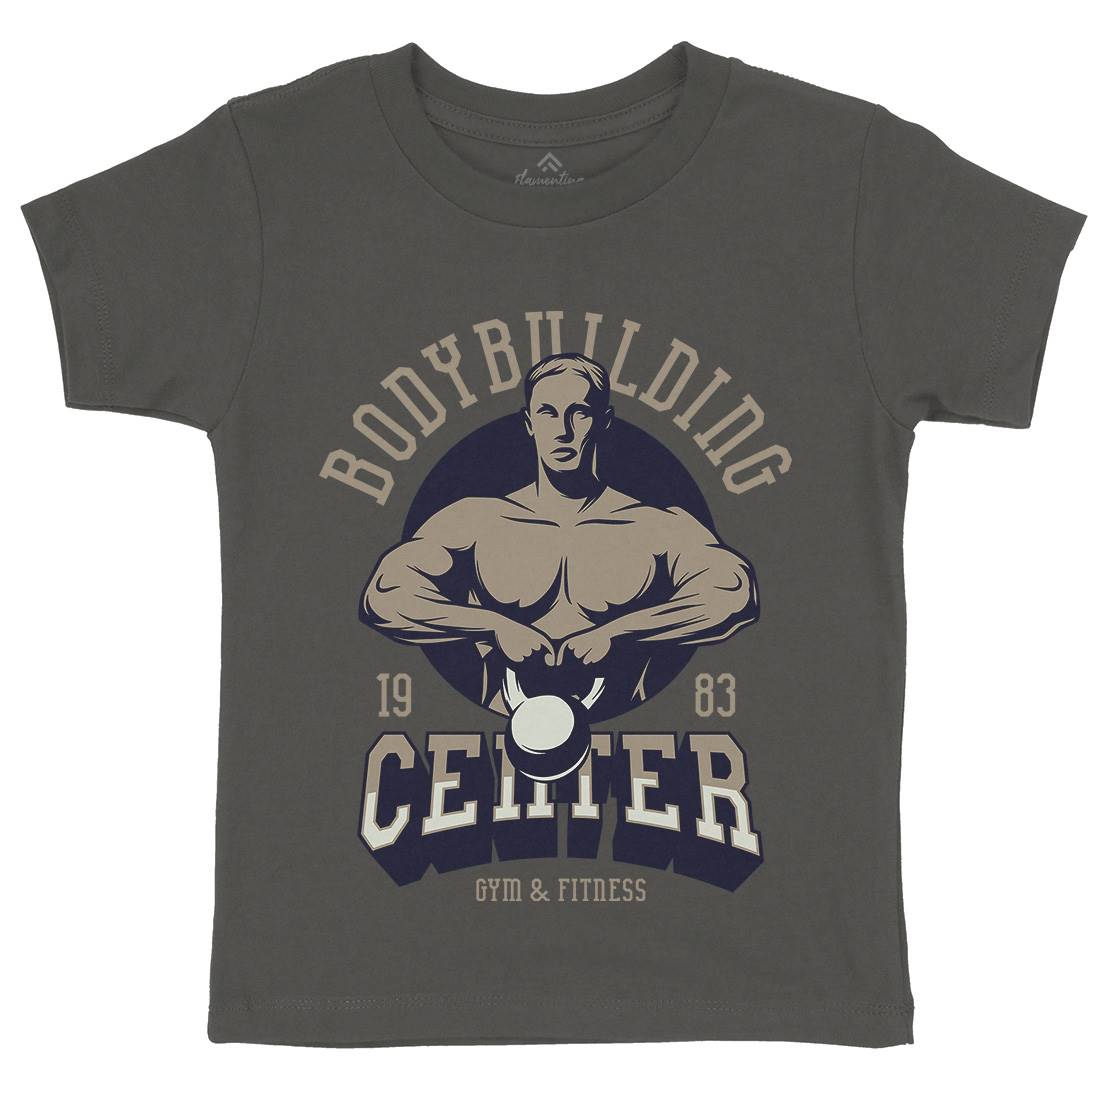 Bodybuilding Centre Kids Crew Neck T-Shirt Gym D911